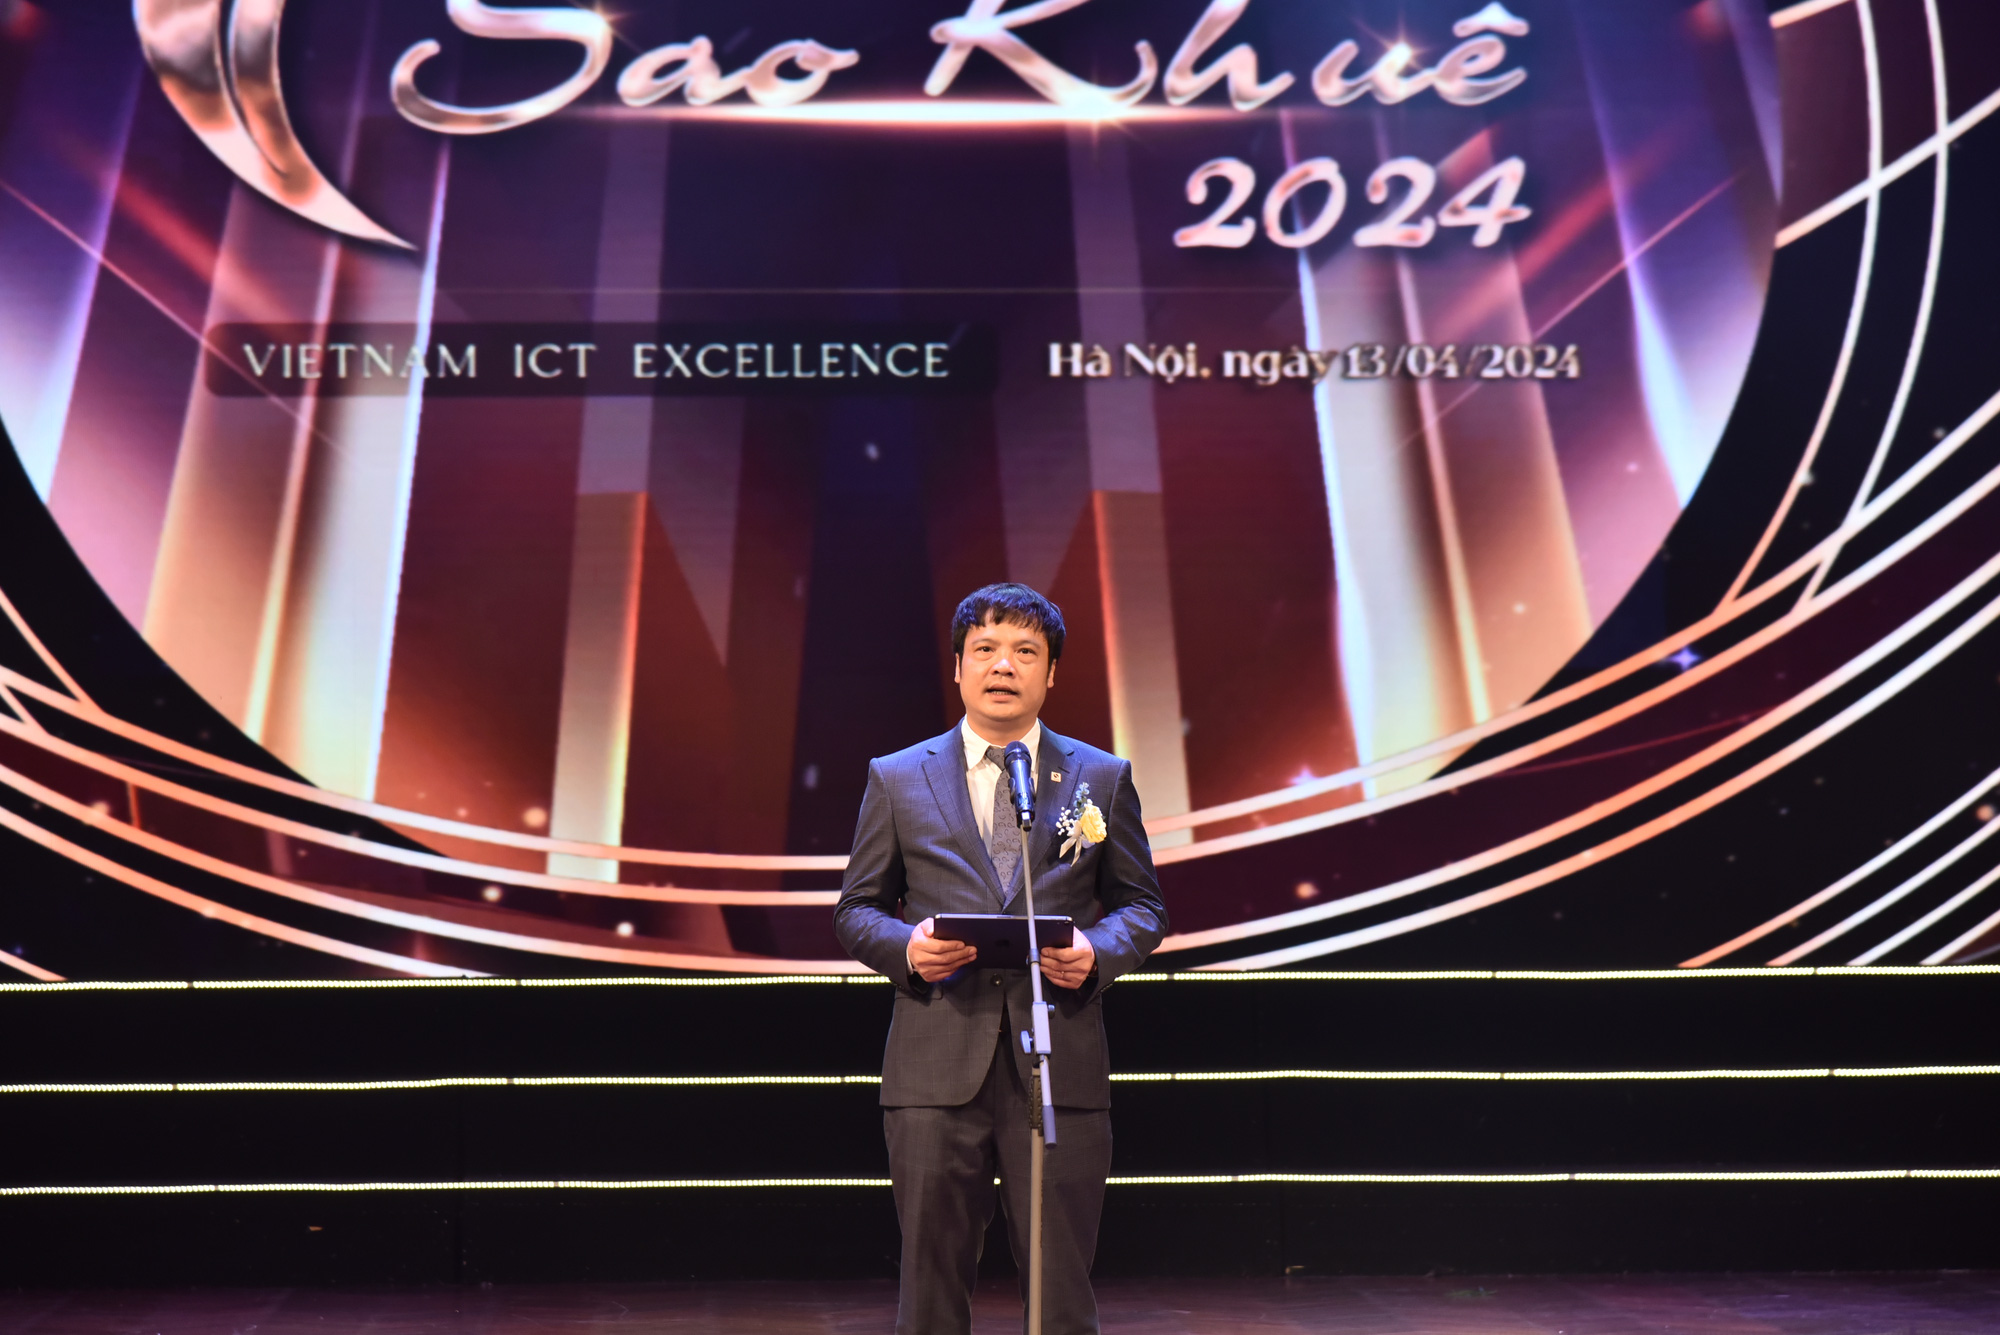 Chủ tịch VINASA Nguyễn Văn Khoa cho biết giải thưởng Sao Khuê những năm tới sẽ được thấy những nền tảng, dịch vụ, giải pháp xuất sắc về bán dẫn, chuyển đổi số - xanh - Ảnh: SONG HÀ